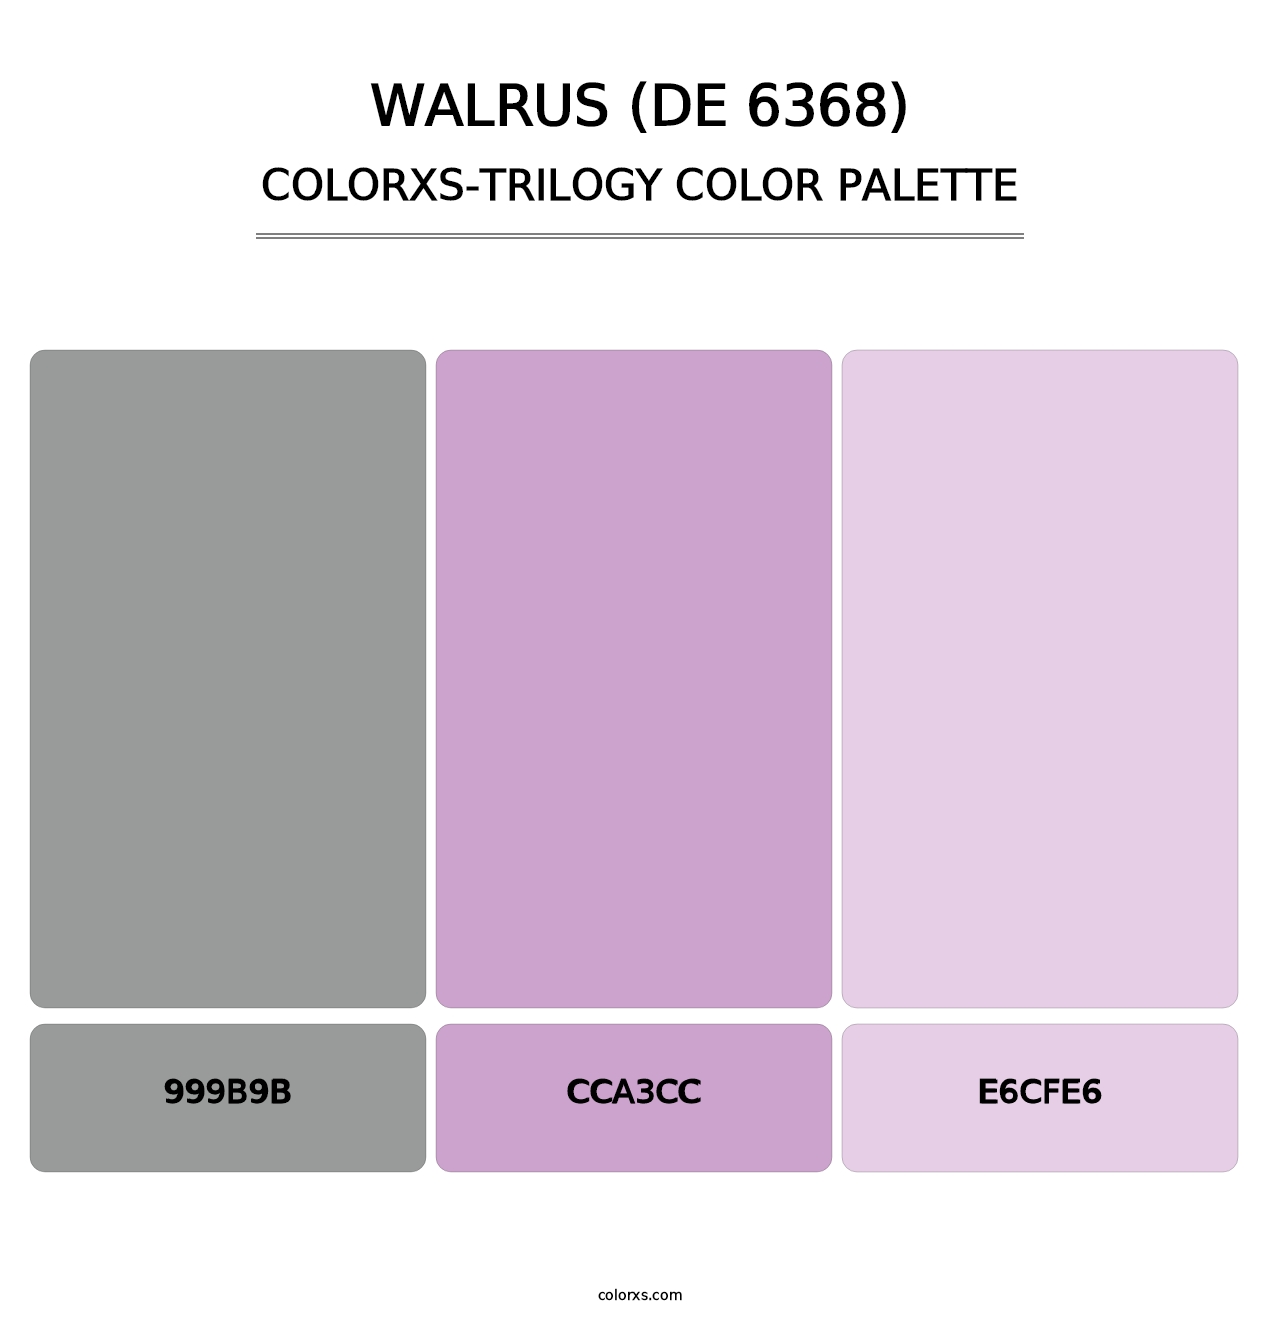 Walrus (DE 6368) - Colorxs Trilogy Palette